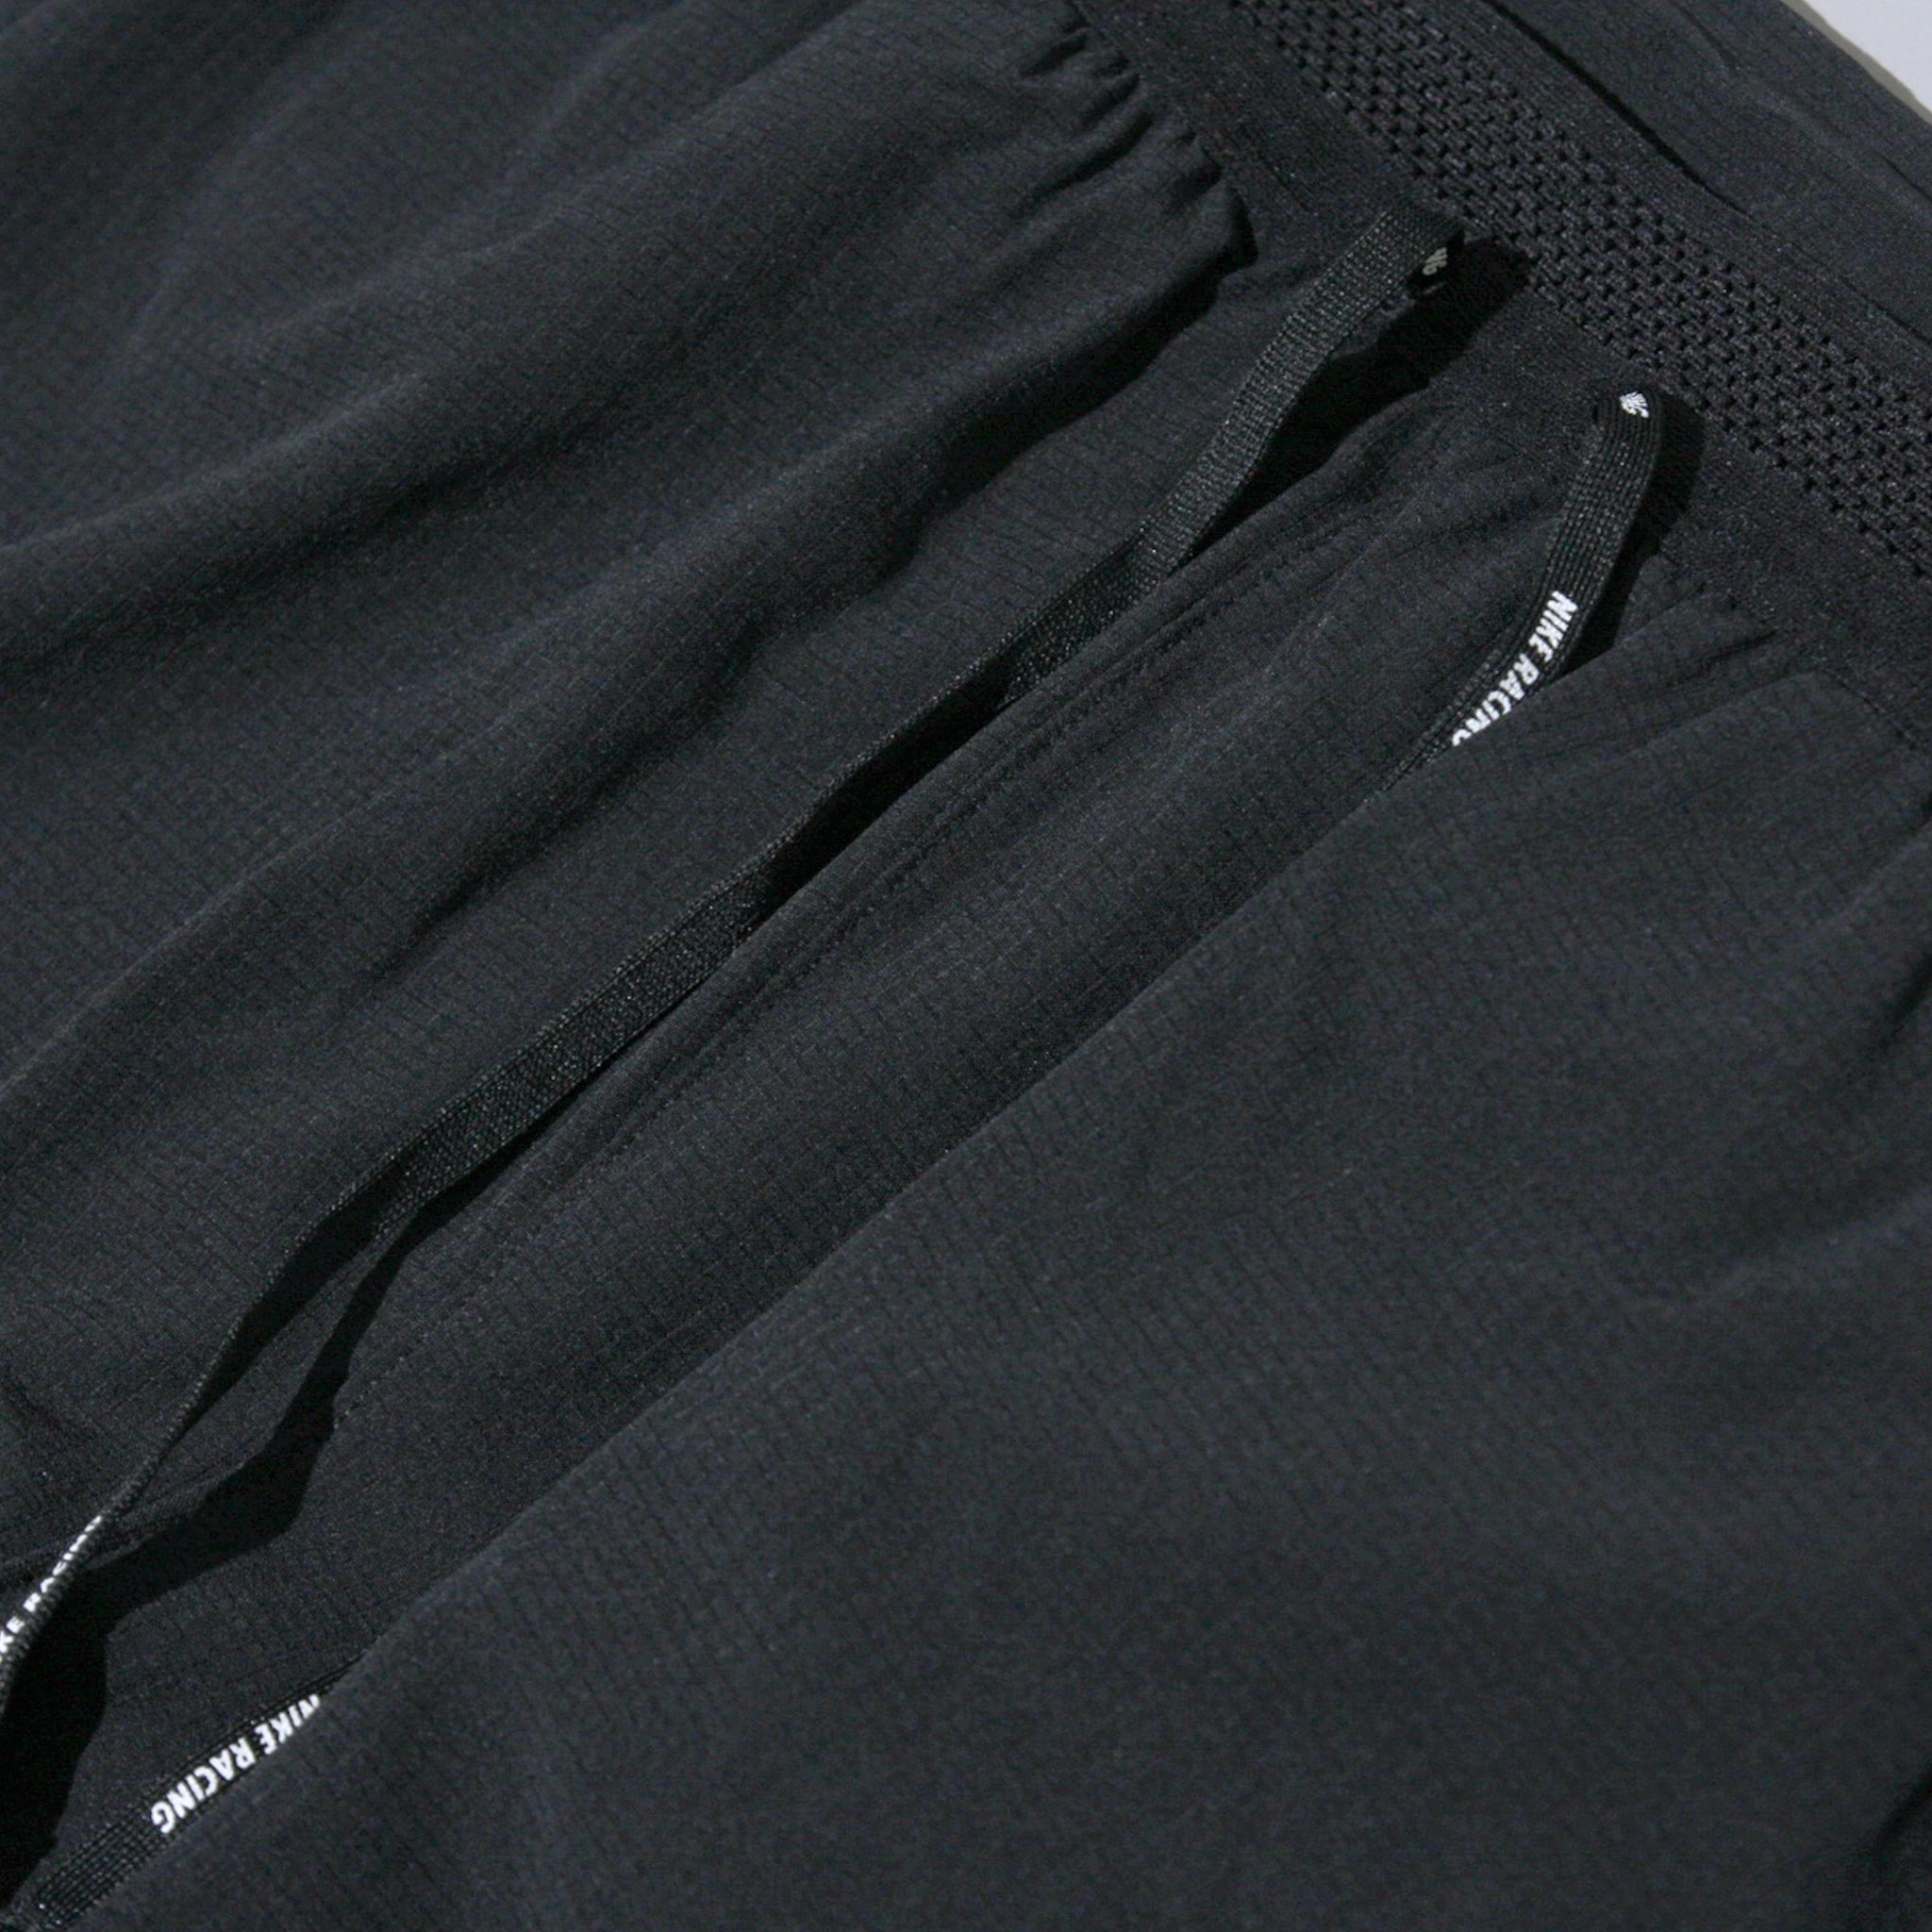 Nike Dri-FIT ADV AeroSwift Pant - Black